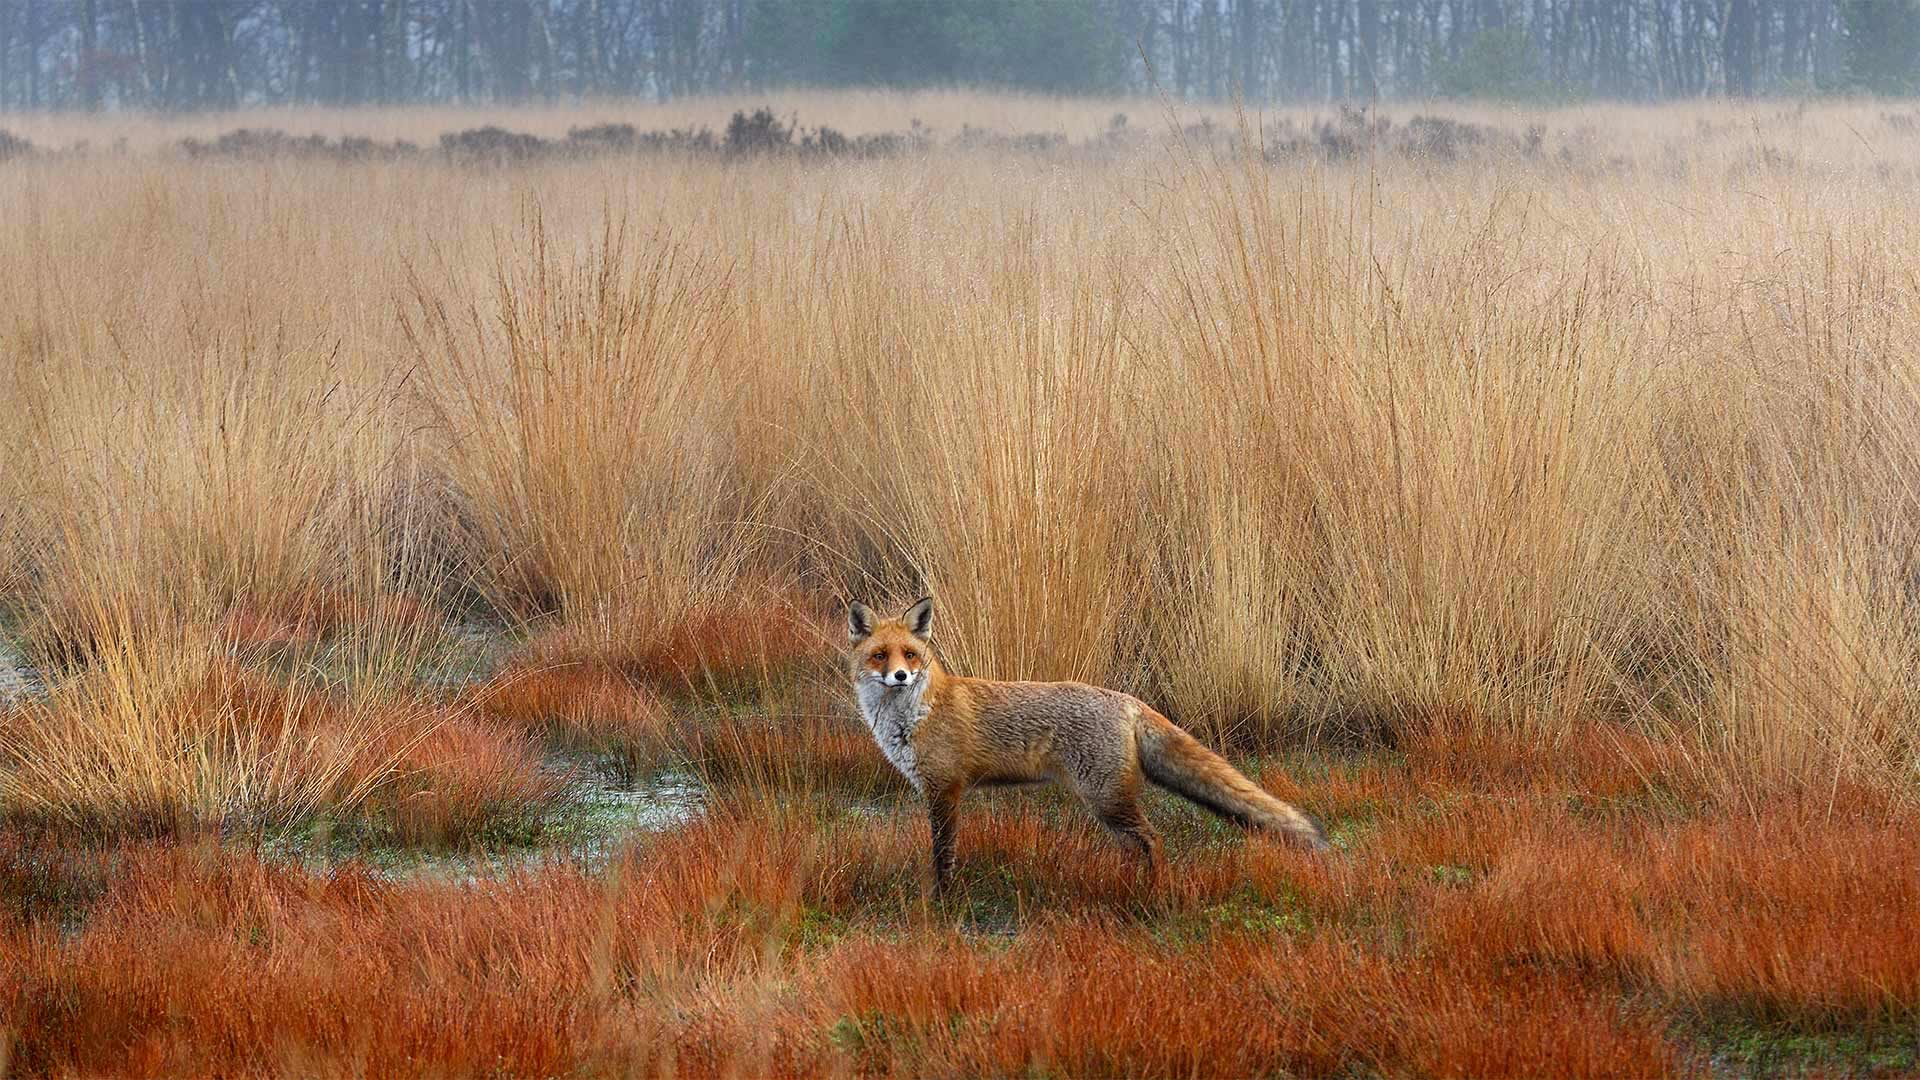 Red fox in the Netherlands - Wim Weenink